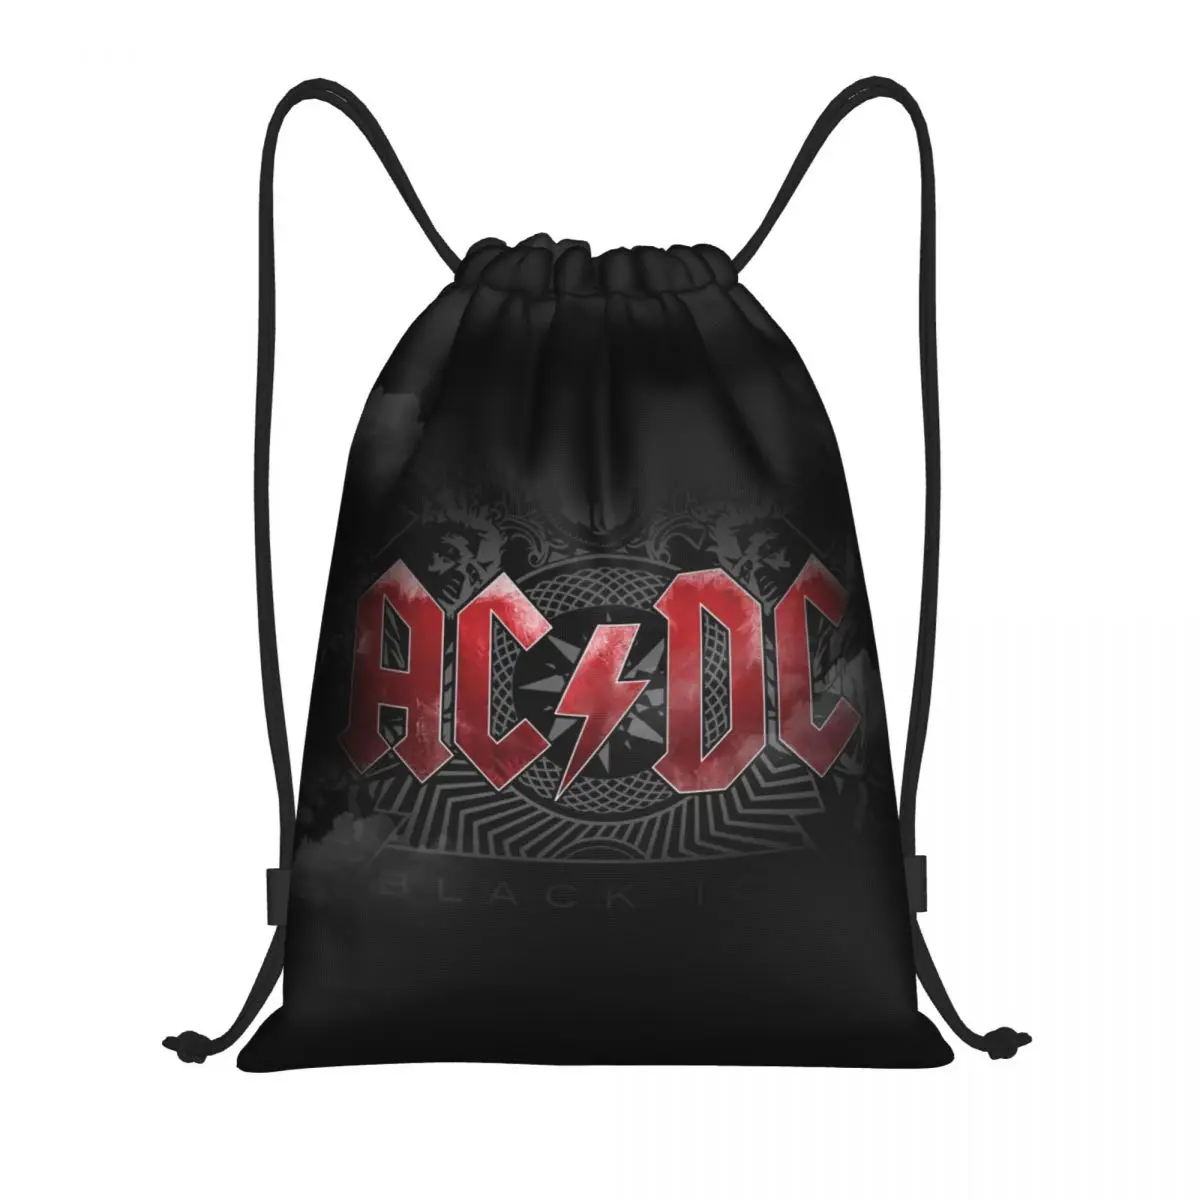 

Оригинальные мужские и женские рюкзаки в стиле ретро рок AC DC рюкзаки с застежкой-шнурком, легкие спортивные рюкзаки из тяжелого металла для занятий музыкой в тренажерном зале, рюкзаки для покупок